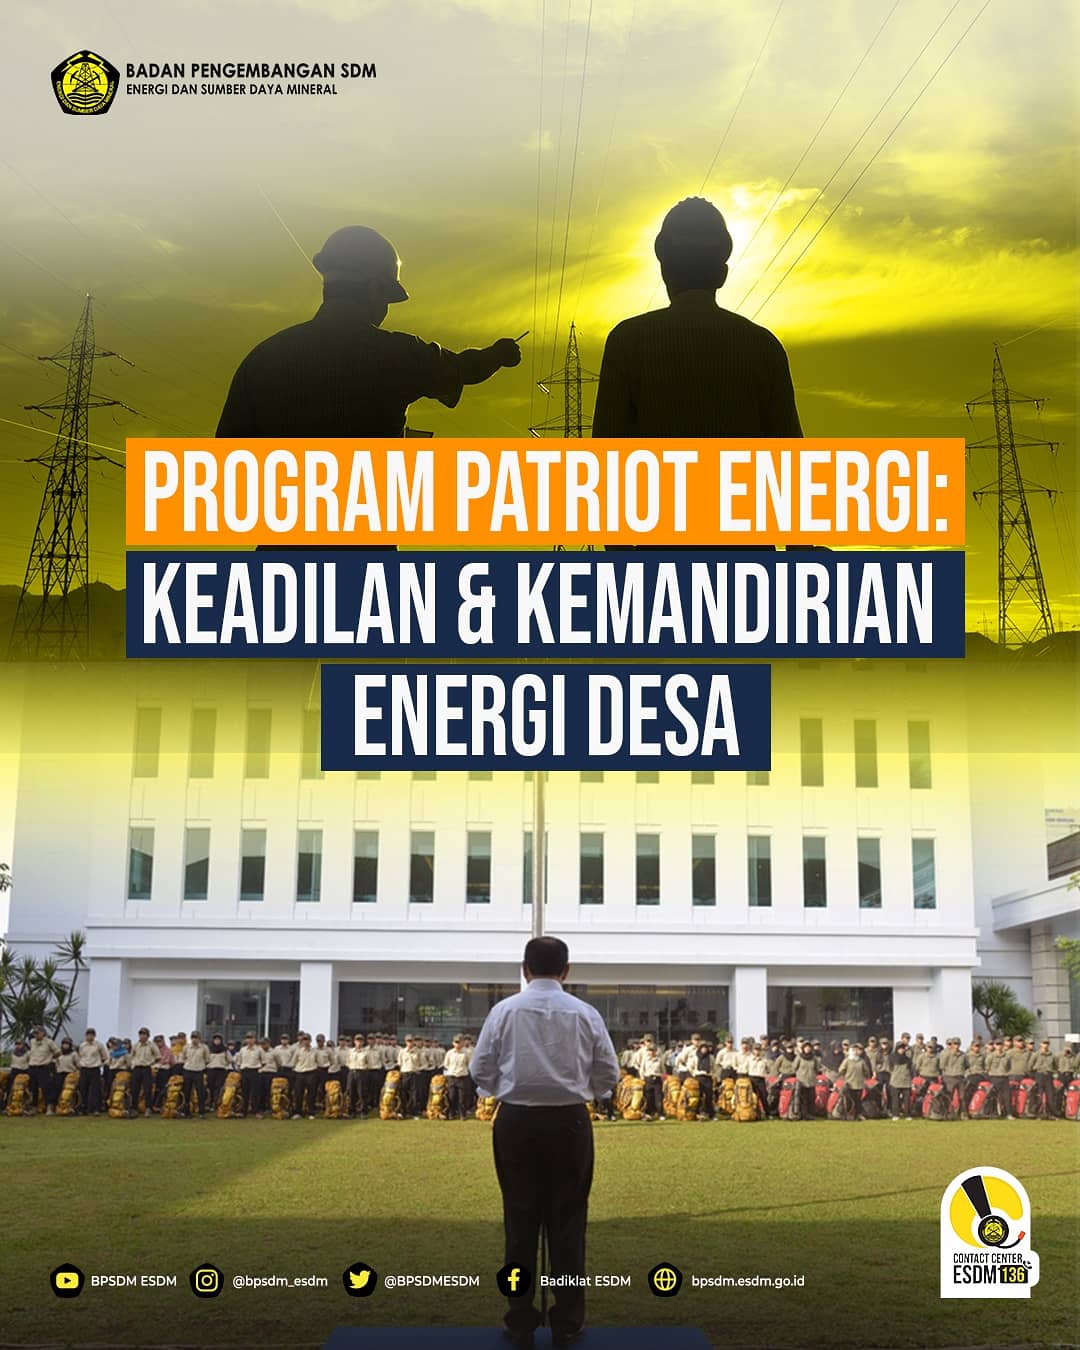 PROGRAM PATRIOT ENERGI: KEADILAN & KEMANDIRIAN ENERGI DESA